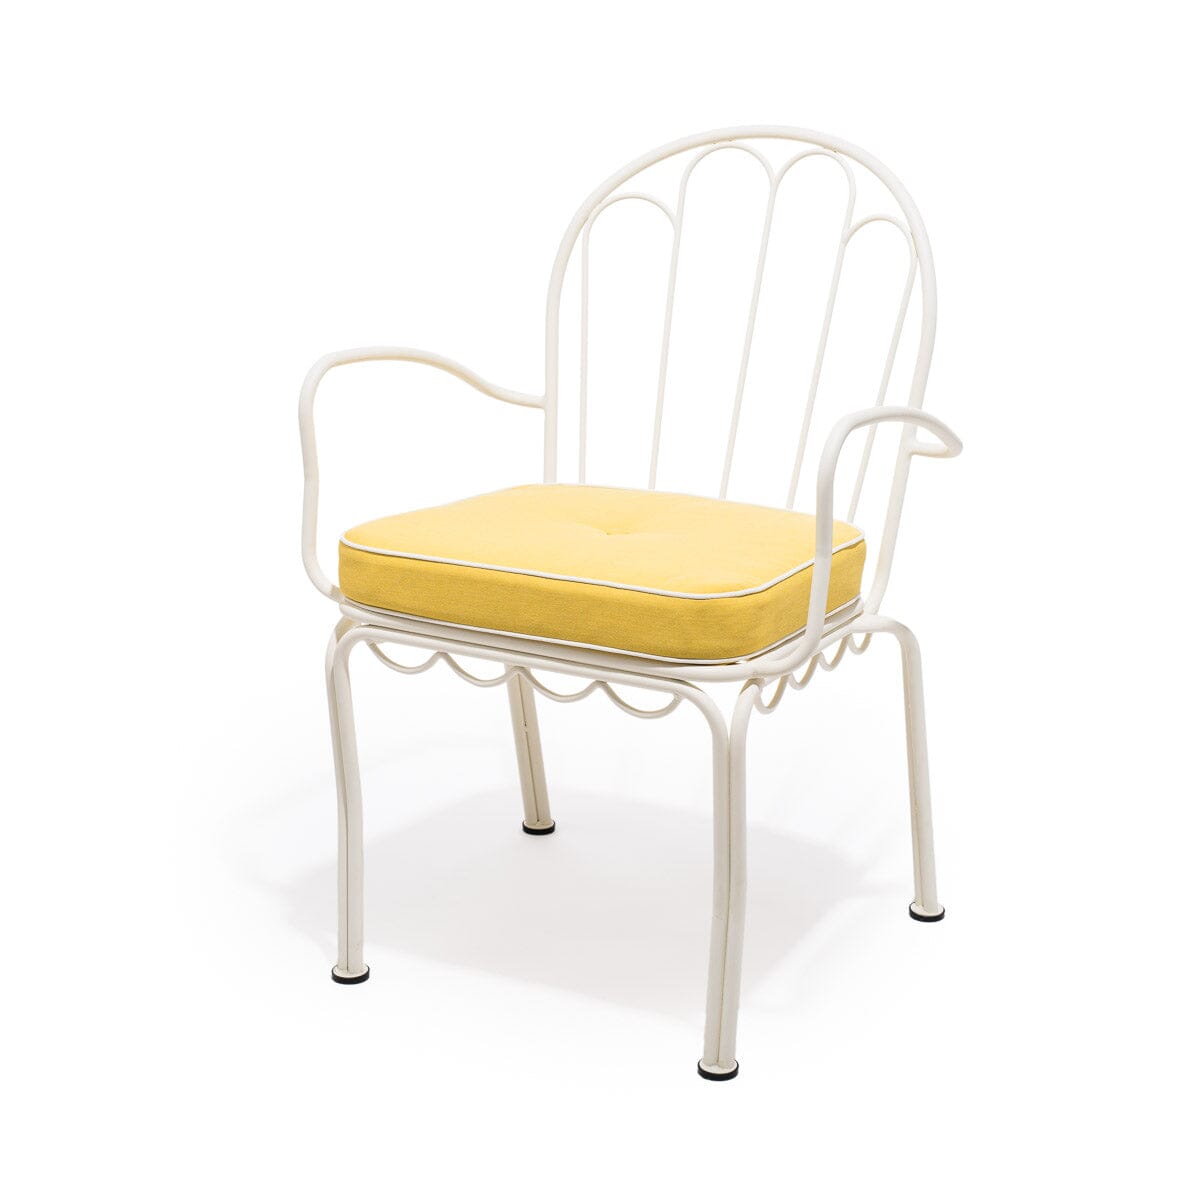 The Al Fresco Chair Cushion - Rivie Mimosa Al Fresco Chair Cushion Business & Pleasure Co 